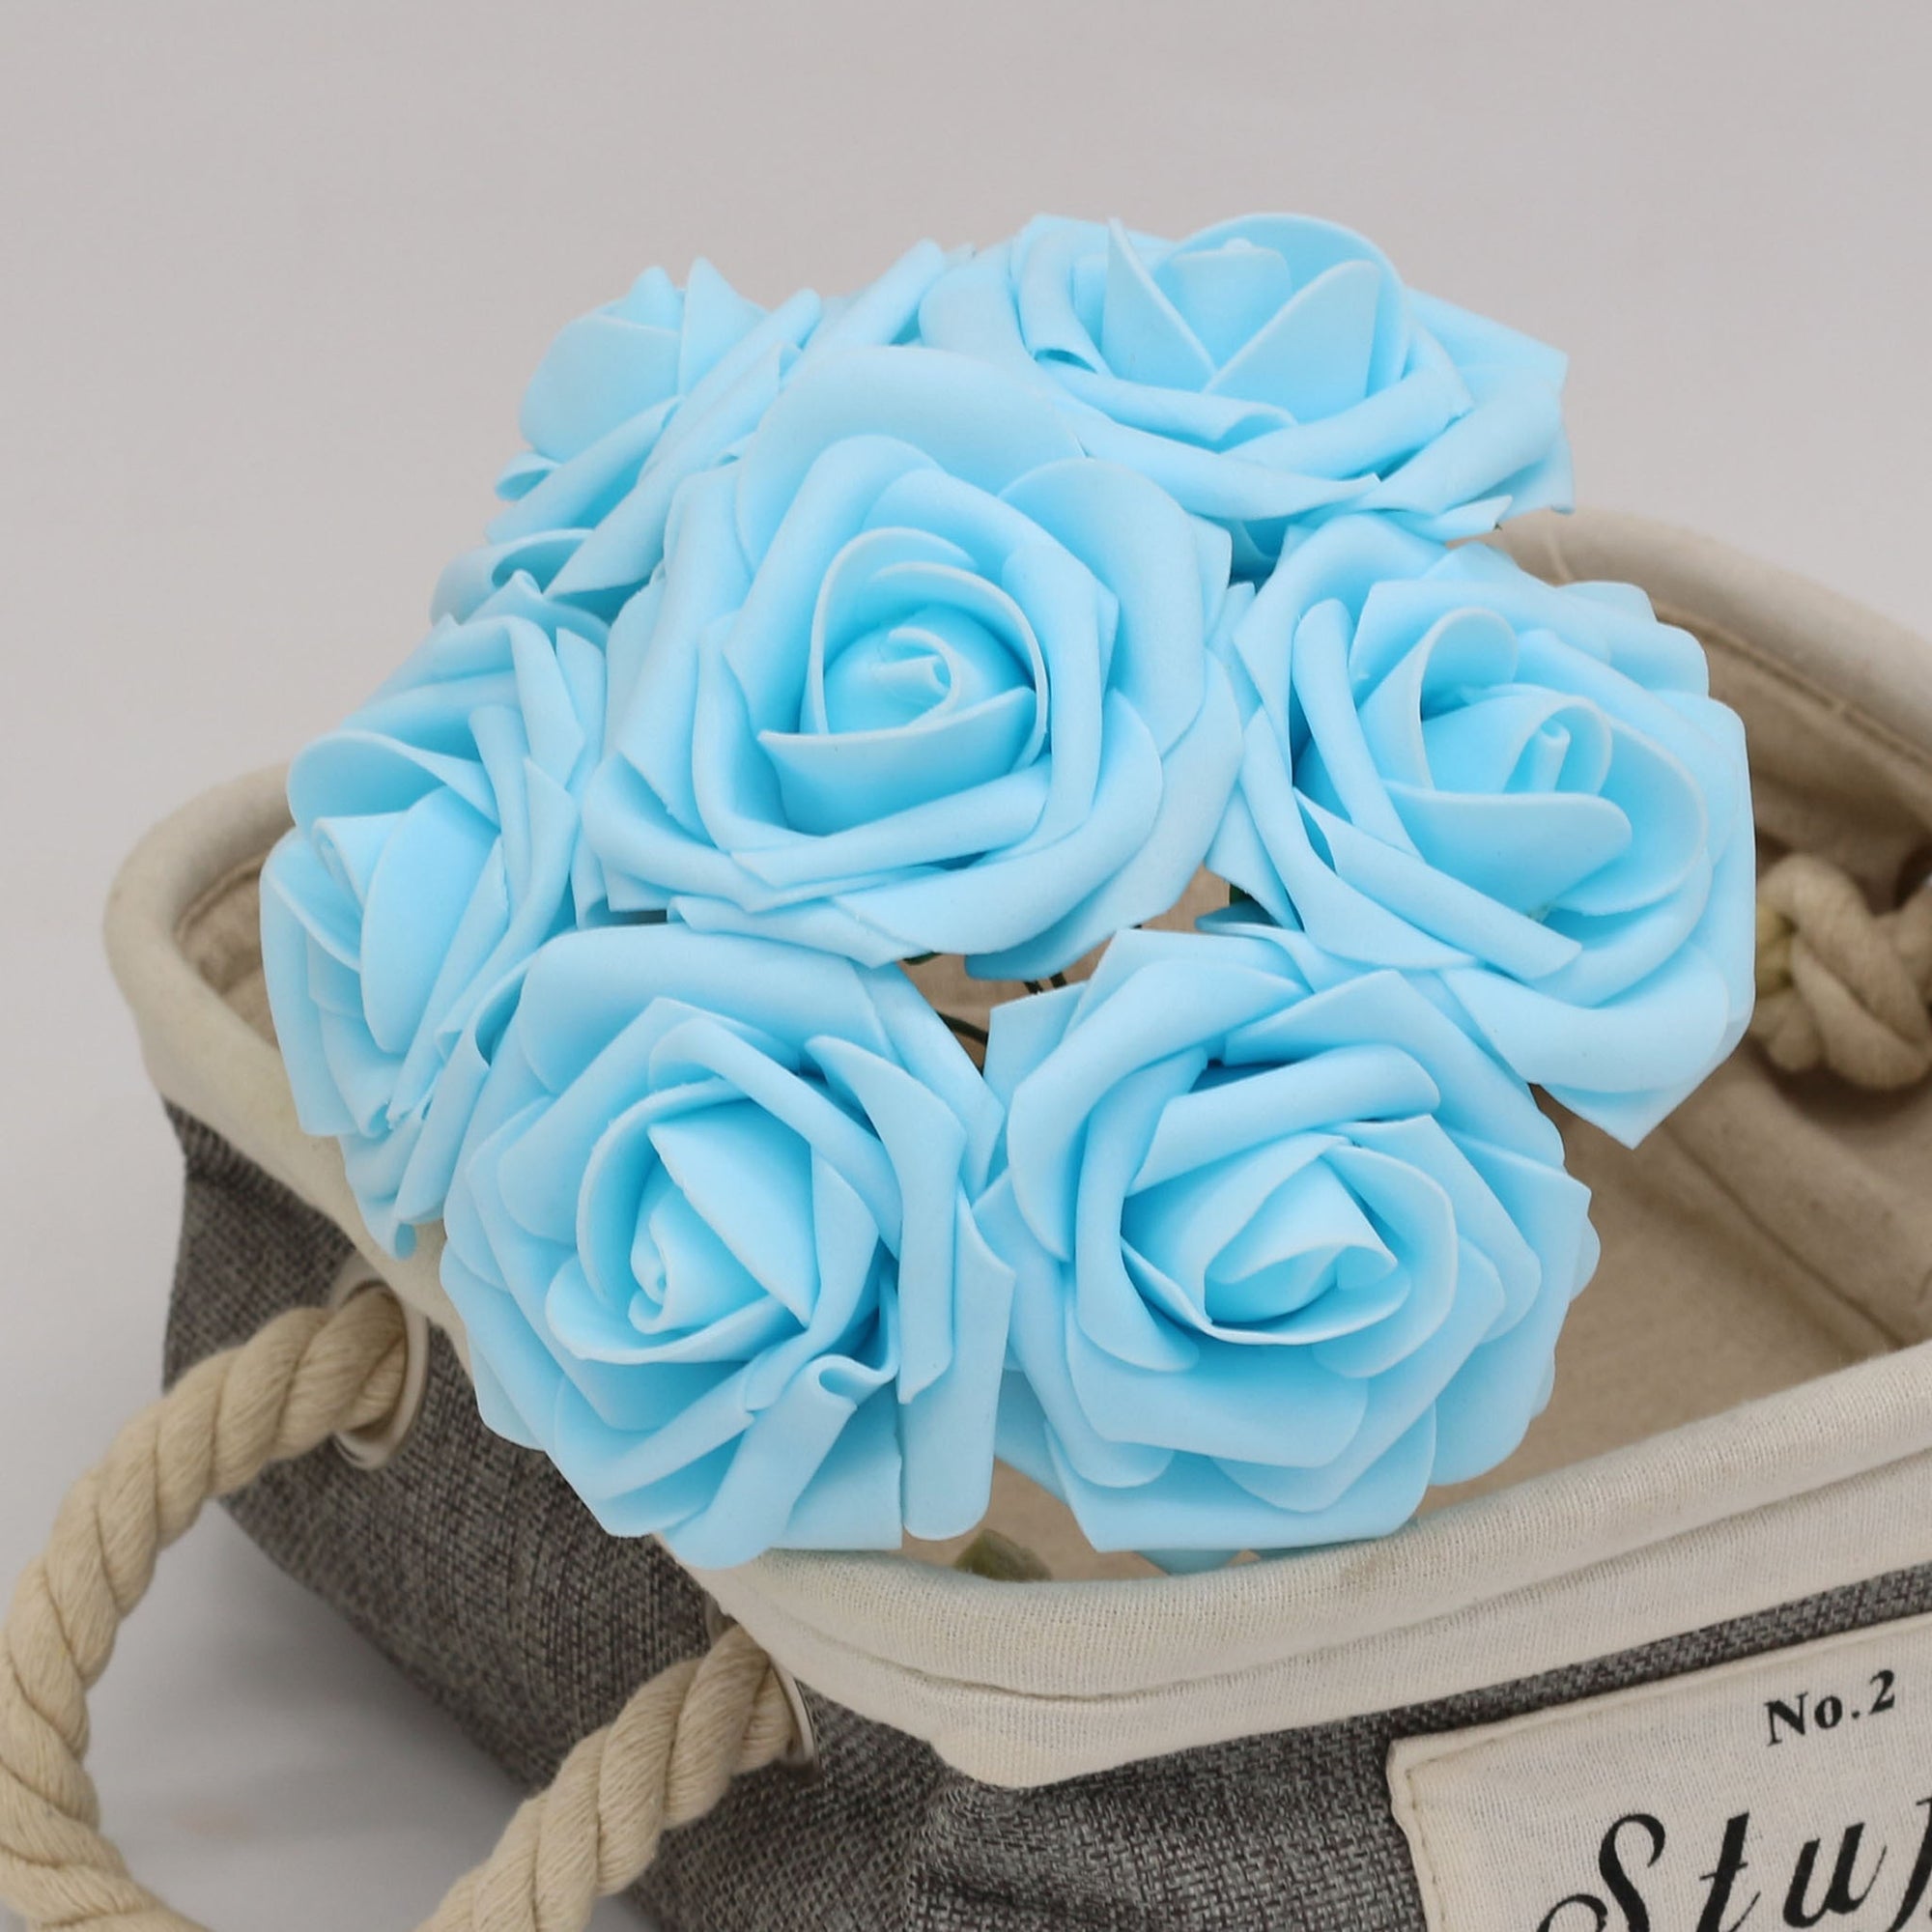 Light Blue Artificial Flowers Bulk Rose Wedding Supplies